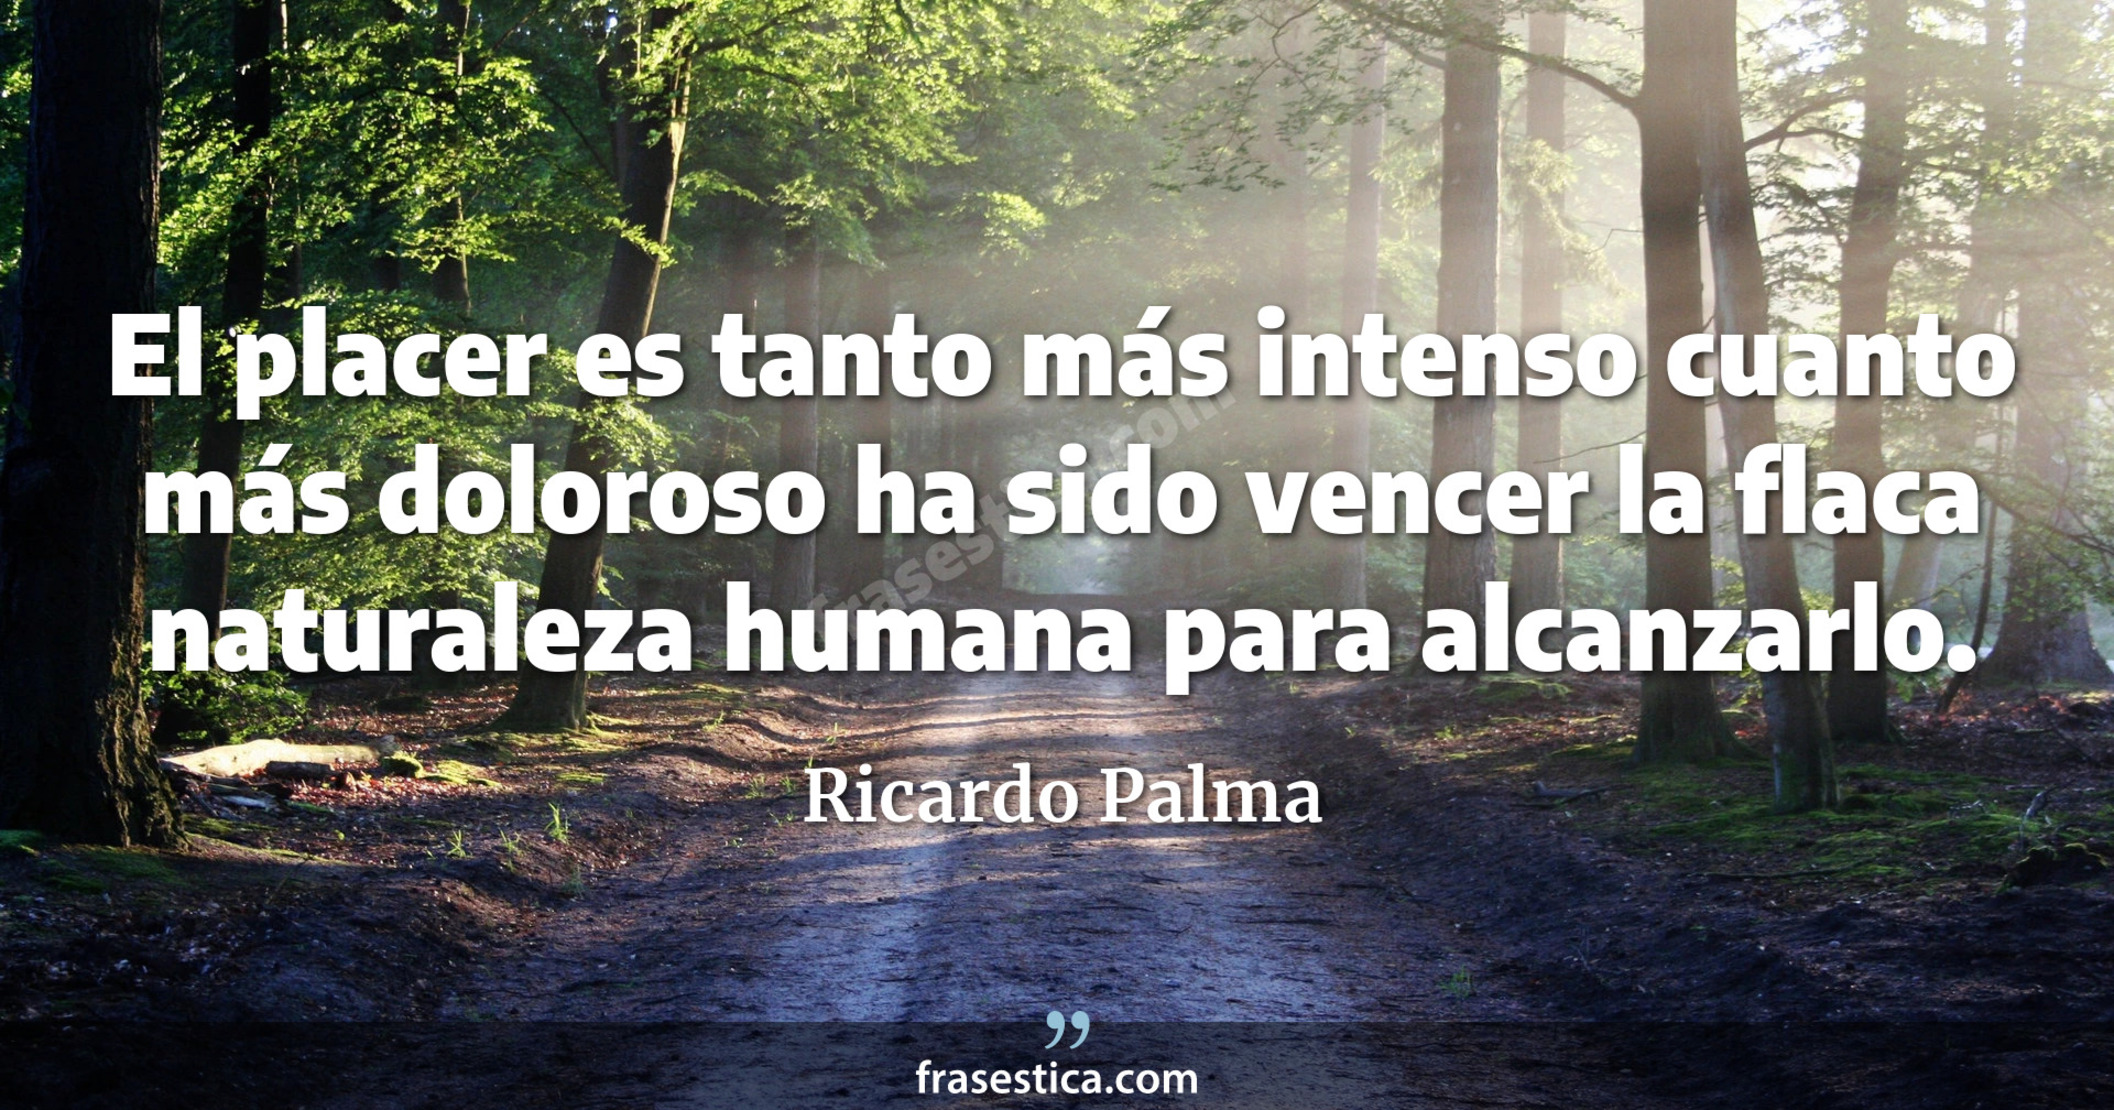 El placer es tanto más intenso cuanto más doloroso ha sido vencer la flaca naturaleza humana para alcanzarlo. - Ricardo Palma